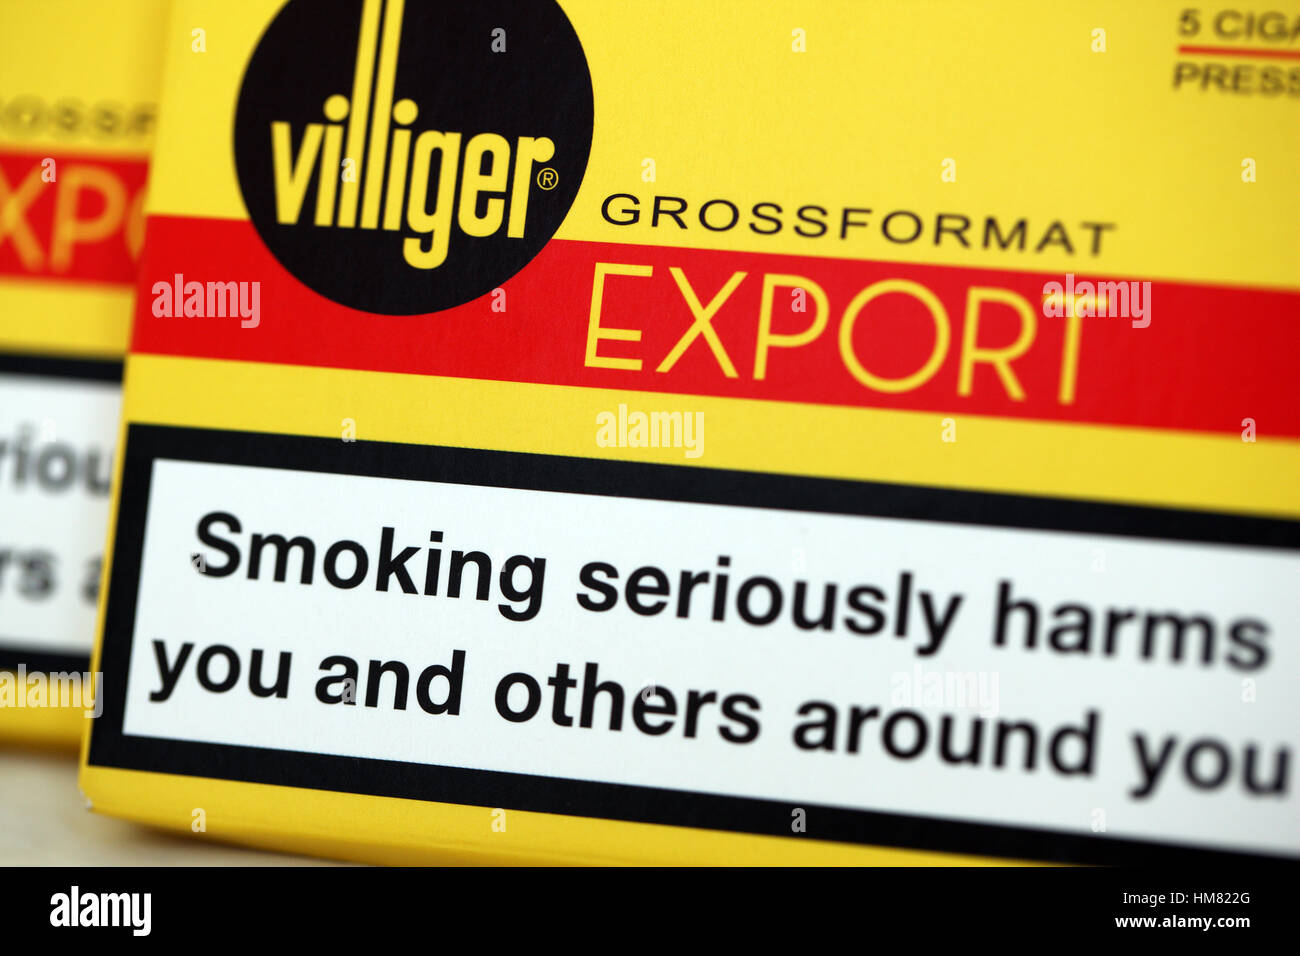 Les mises en garde sur un des paquets de cigares Villiger Banque D'Images